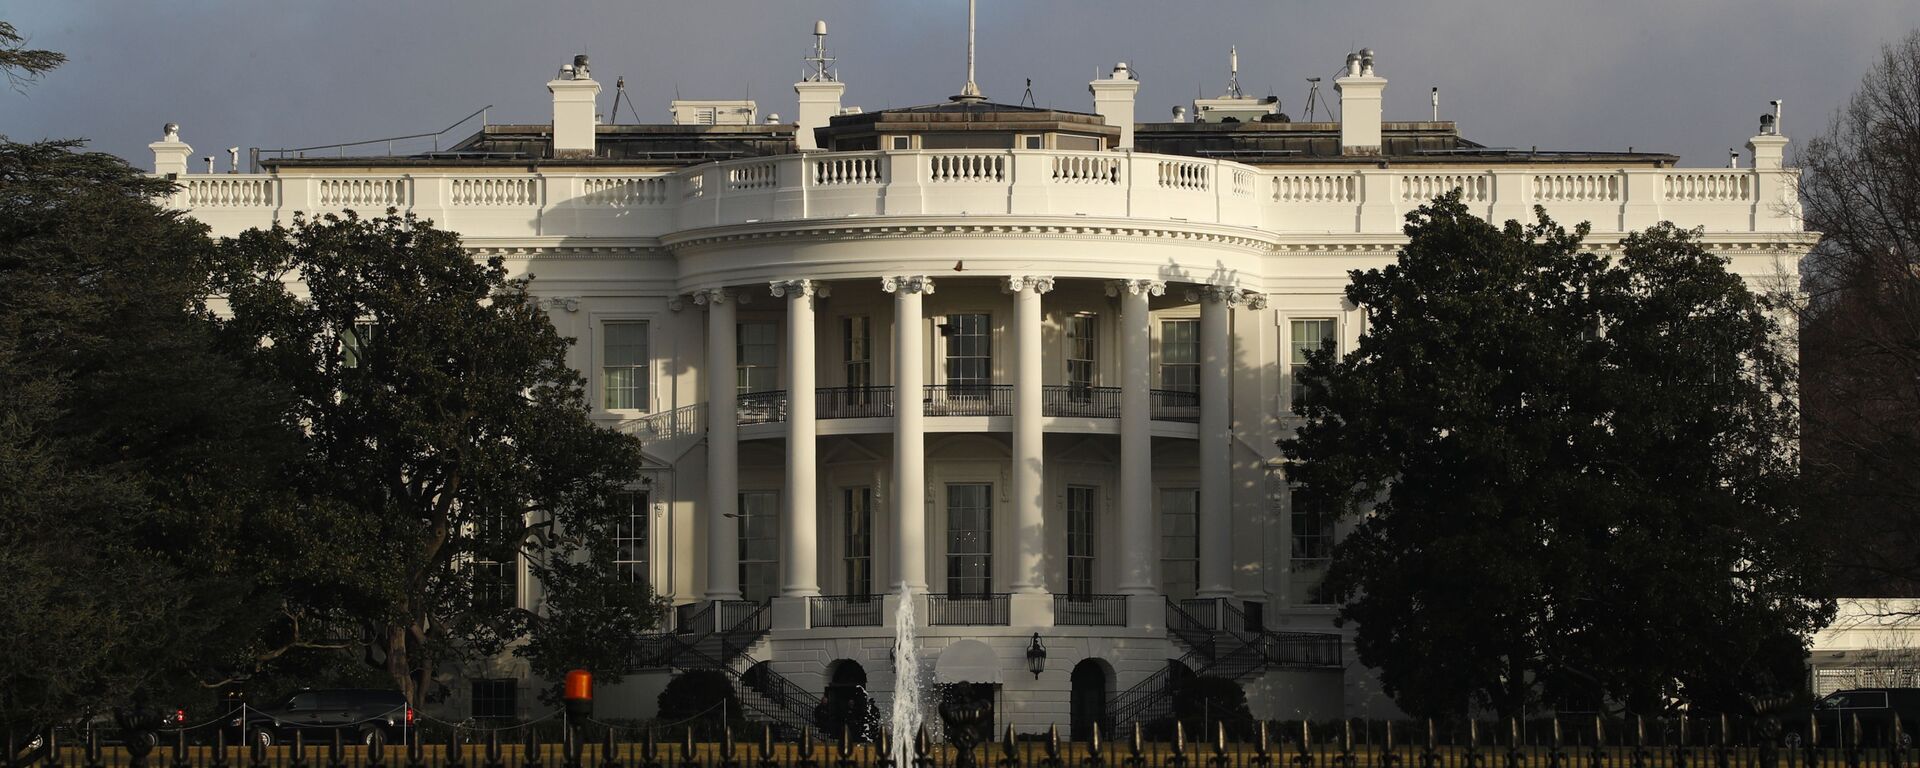 Официальная резиденция президента США - Белый дом - Sputnik Армения, 1920, 23.12.2021